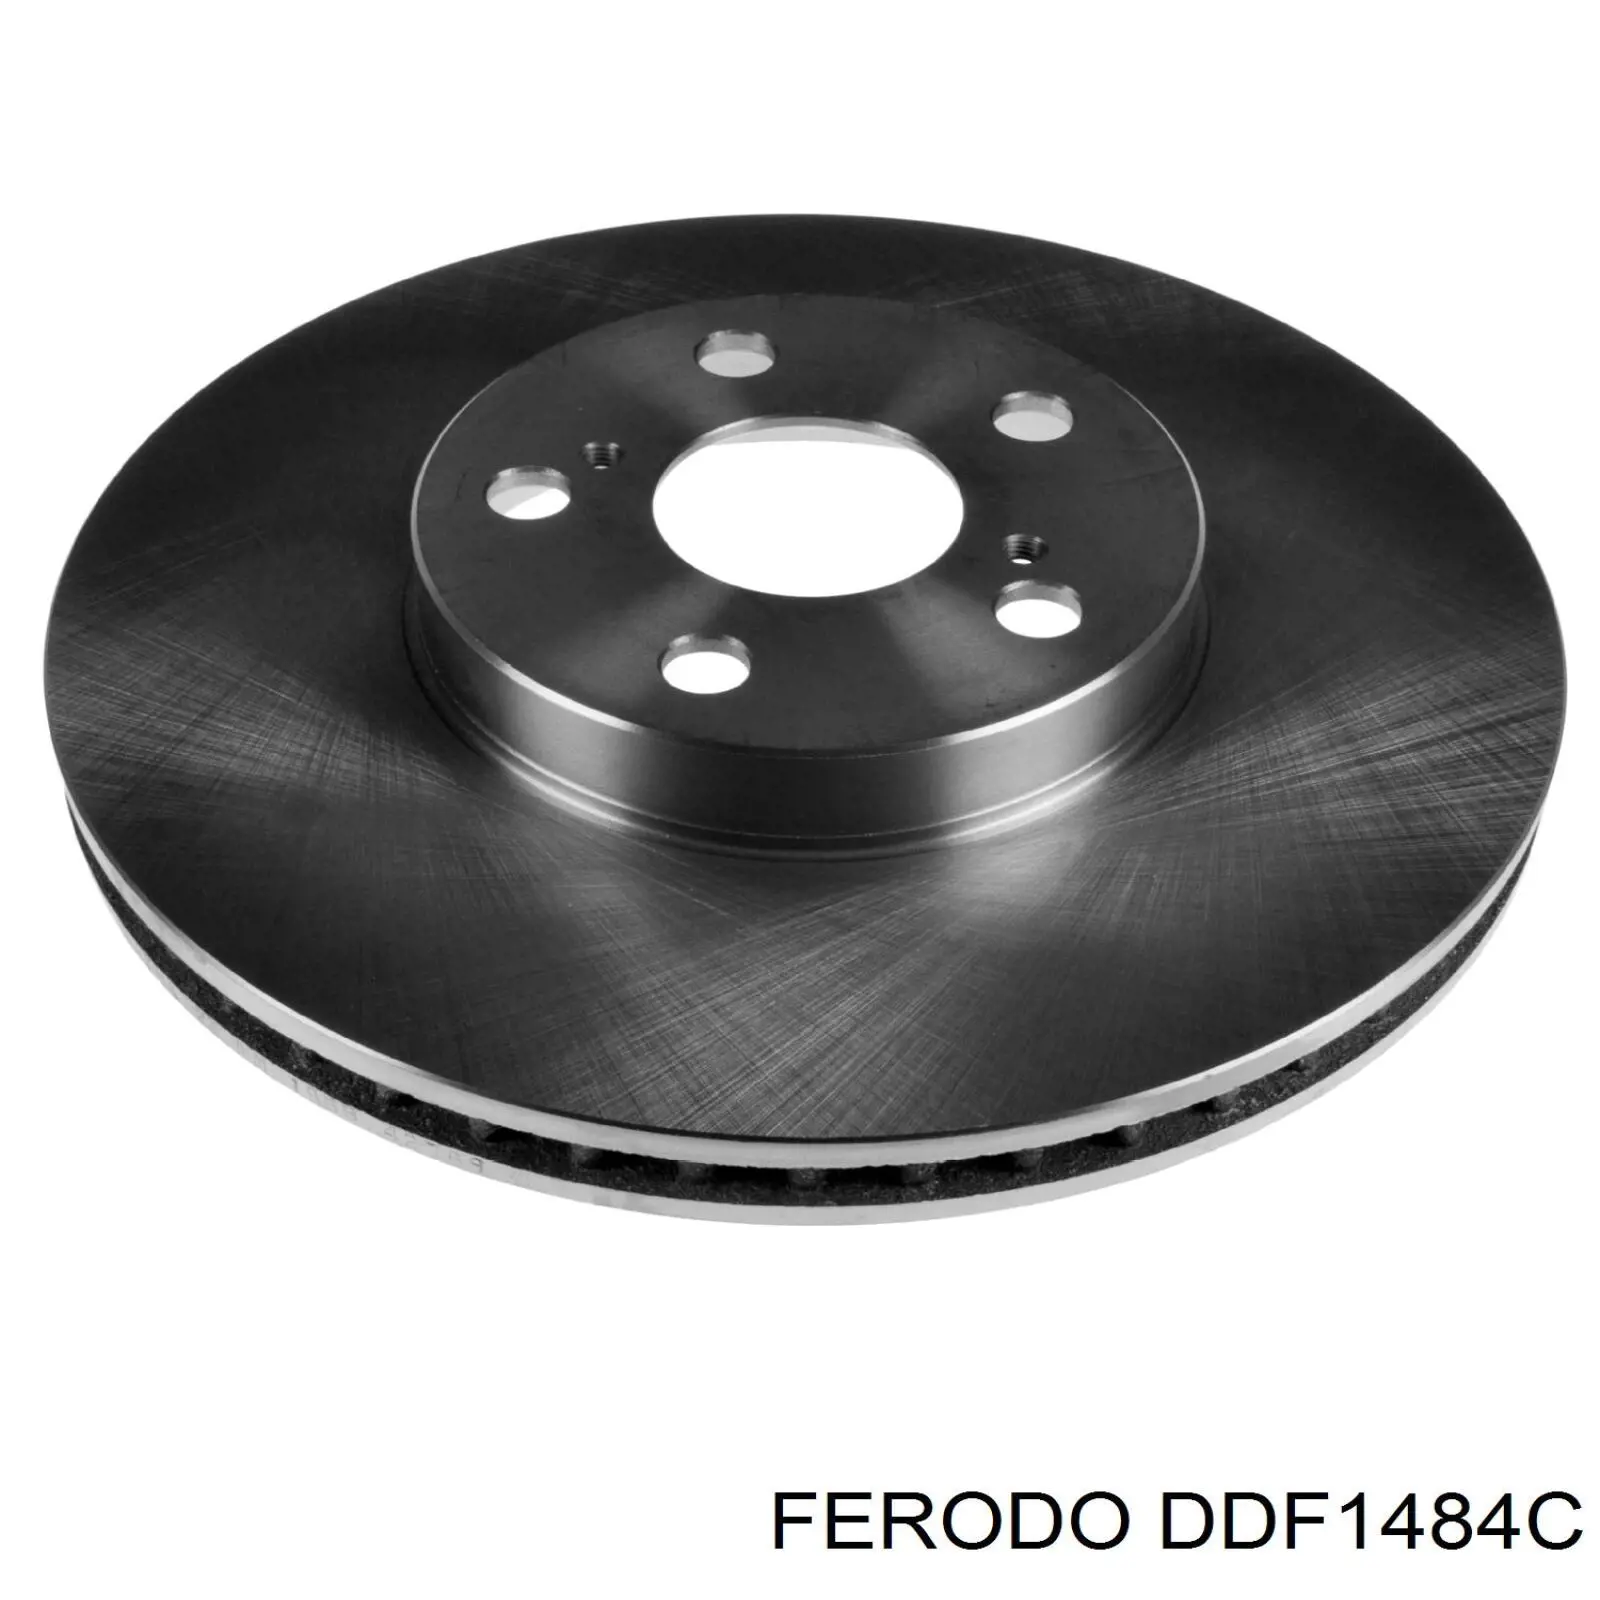 DDF1484C Ferodo disco de freno delantero